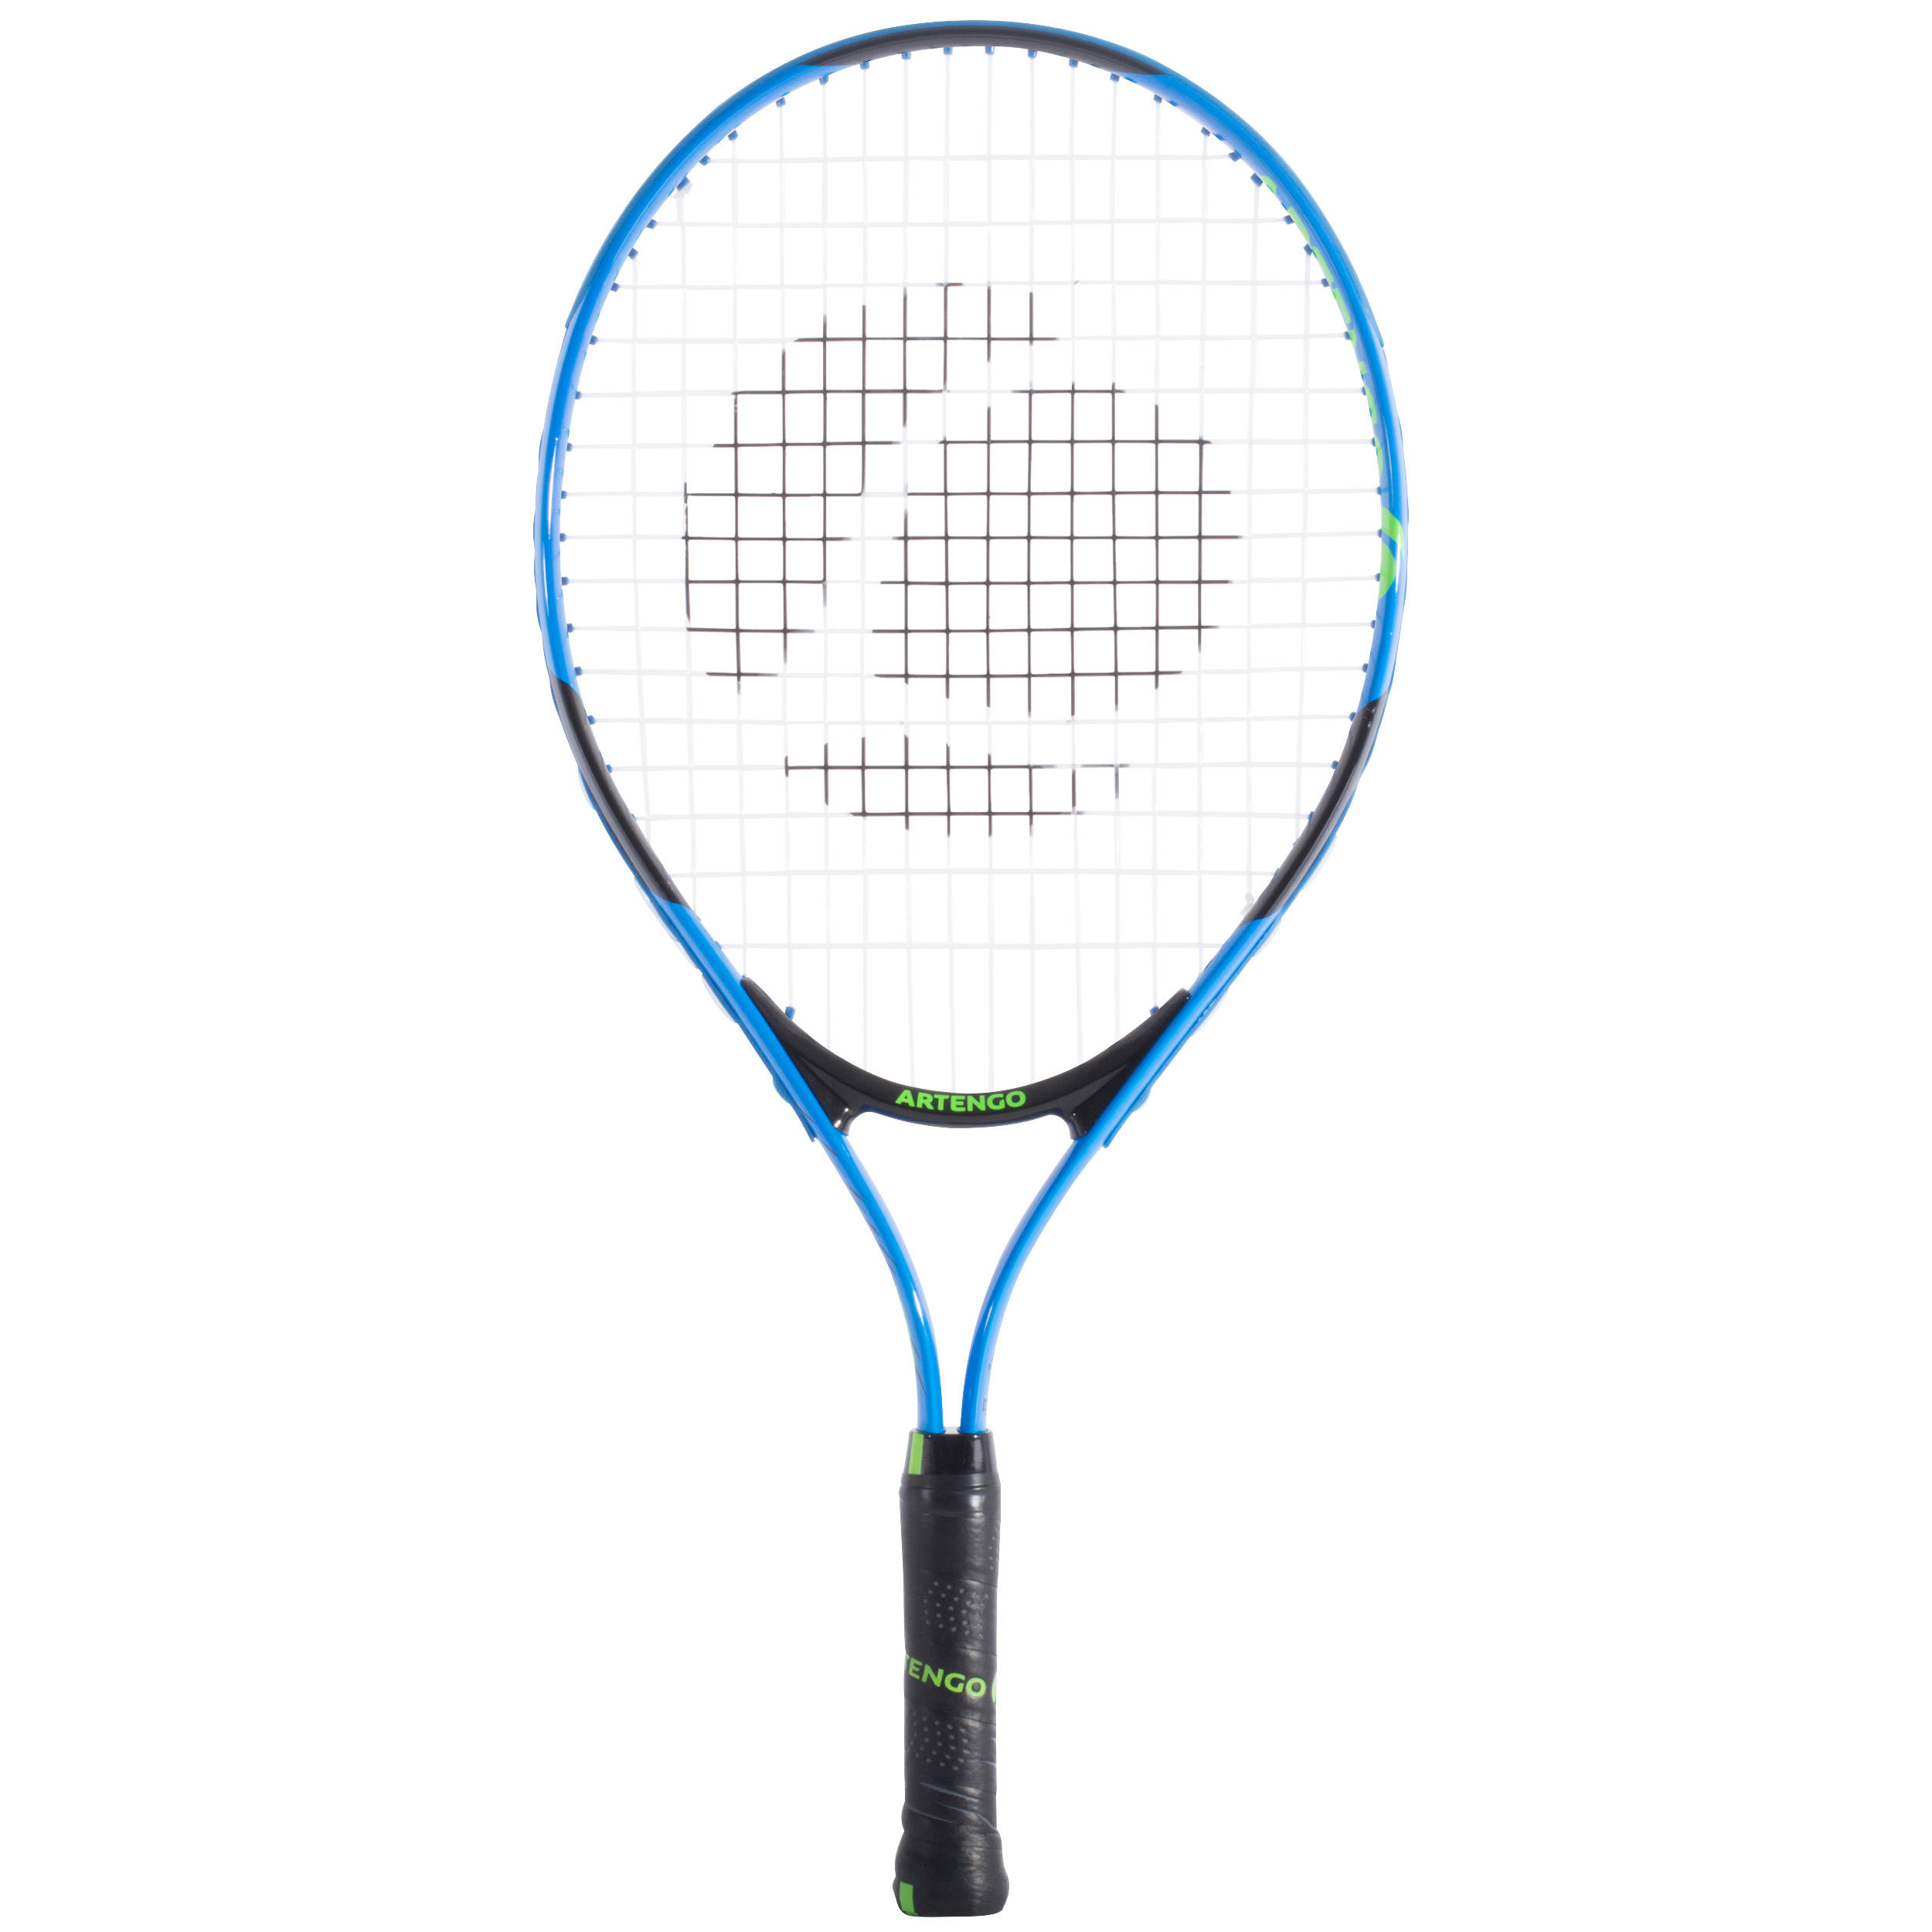 Buy Tennis Racket Online At Decathlon.In